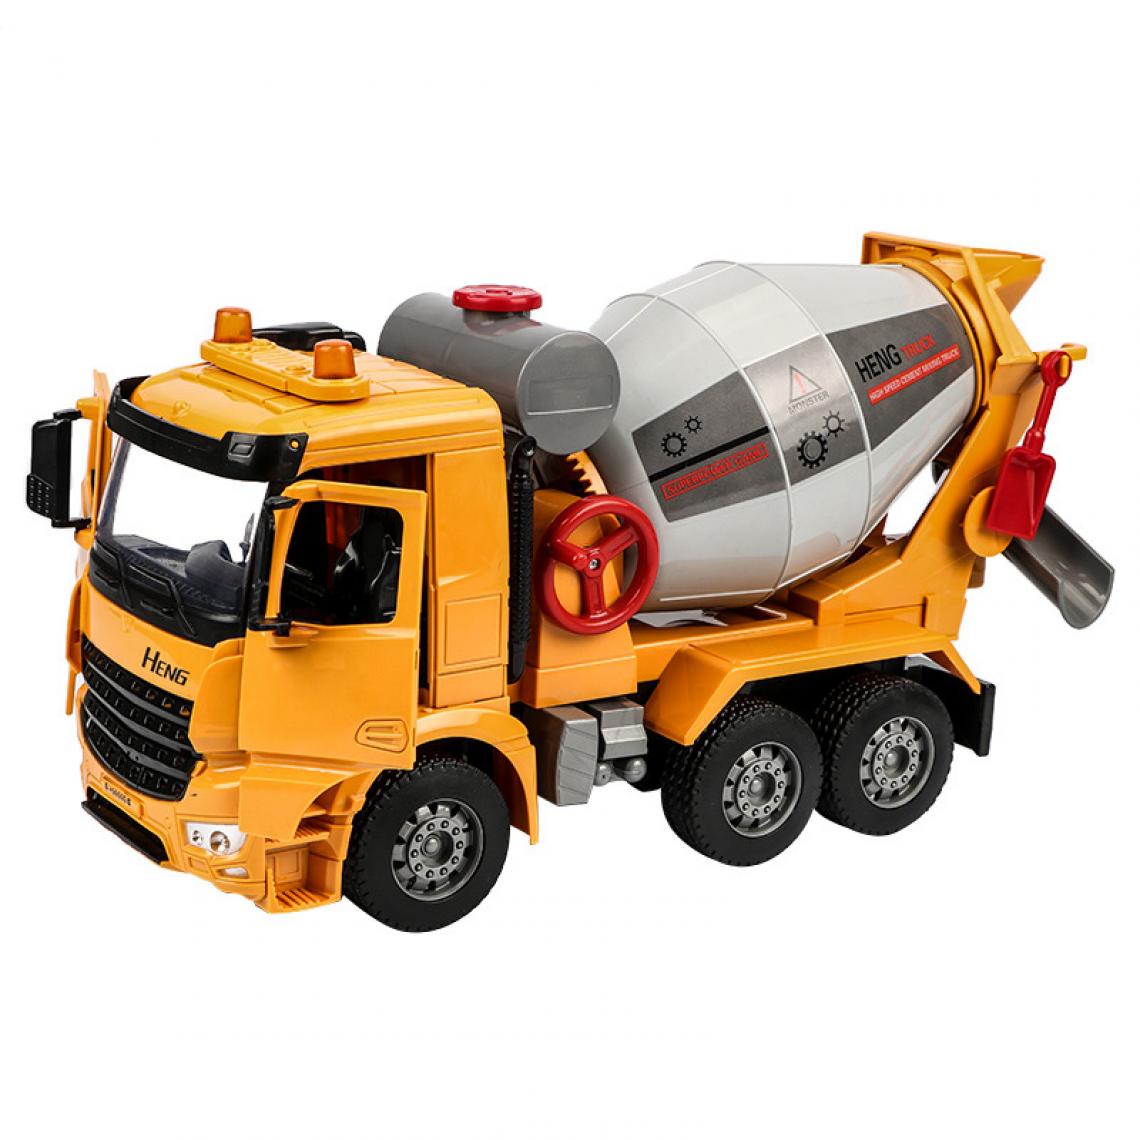 Universal - 1: 18 Simulation d'un camion d'ingénierie qui peut vraiment mélanger un camion de mélange, un modèle de jouet, un son et une voiture légère, de la colle, de la colle, du béton, des cadeaux de voiture.(Jaune) - Voitures